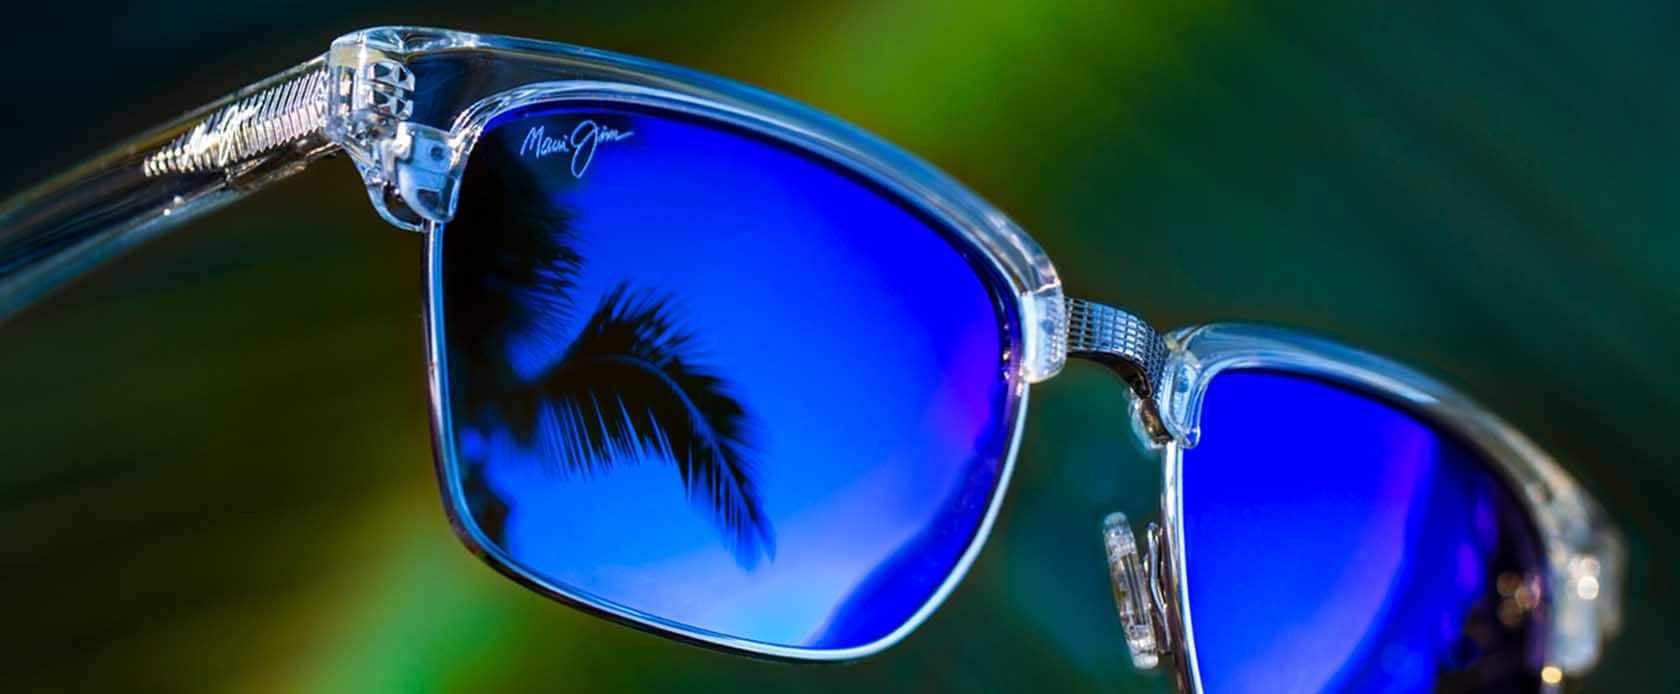 Sonnenbrille mit transparenter Fassung und blauen Gläsern mit Himmelsspiegelung